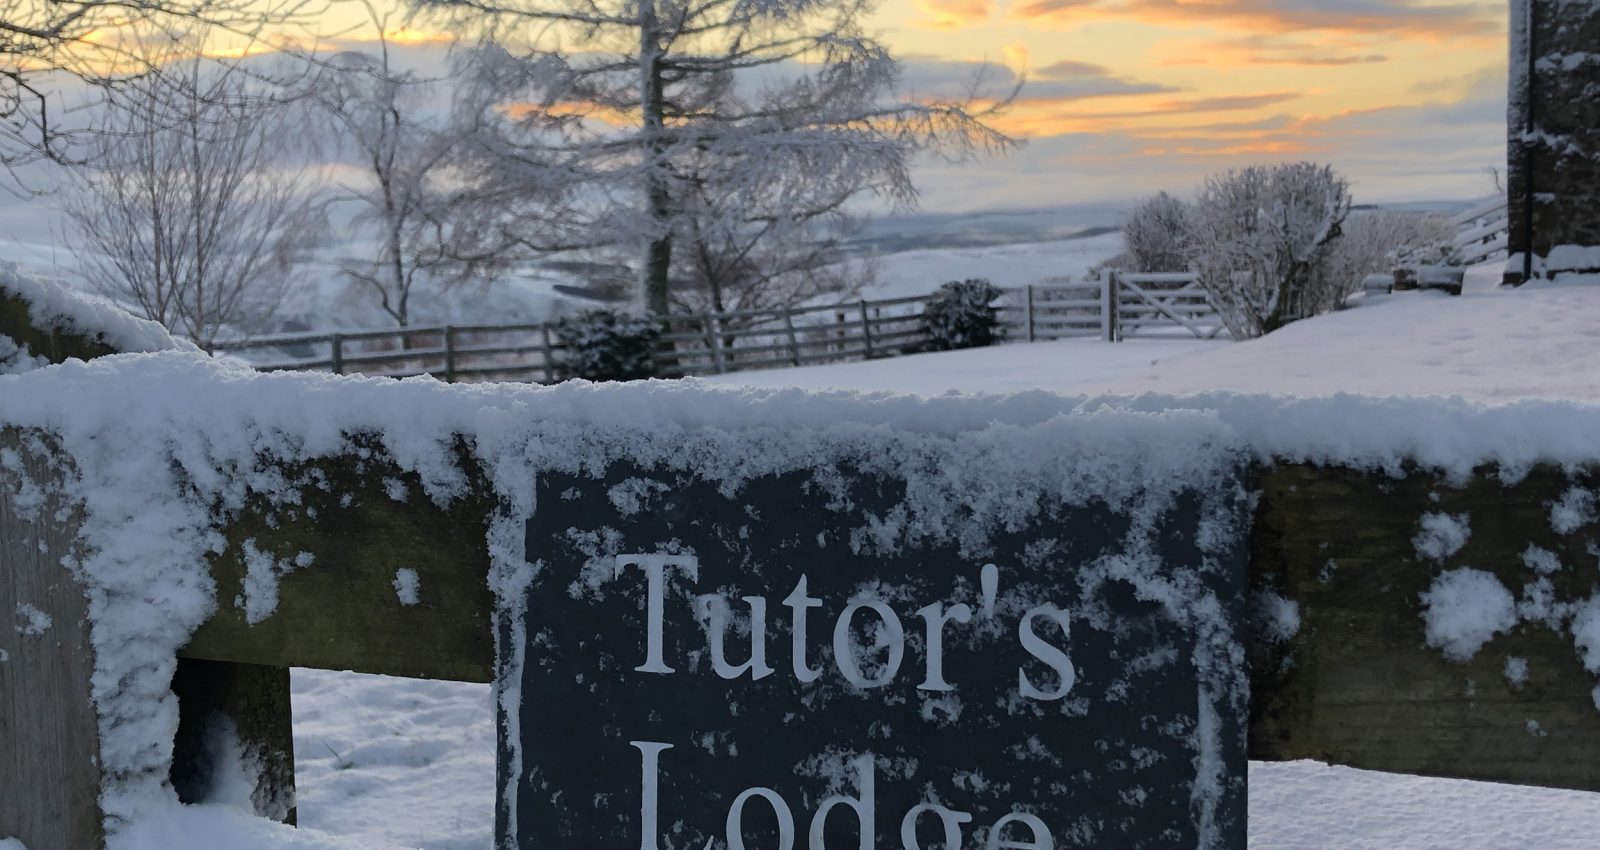 Tutors Lodge